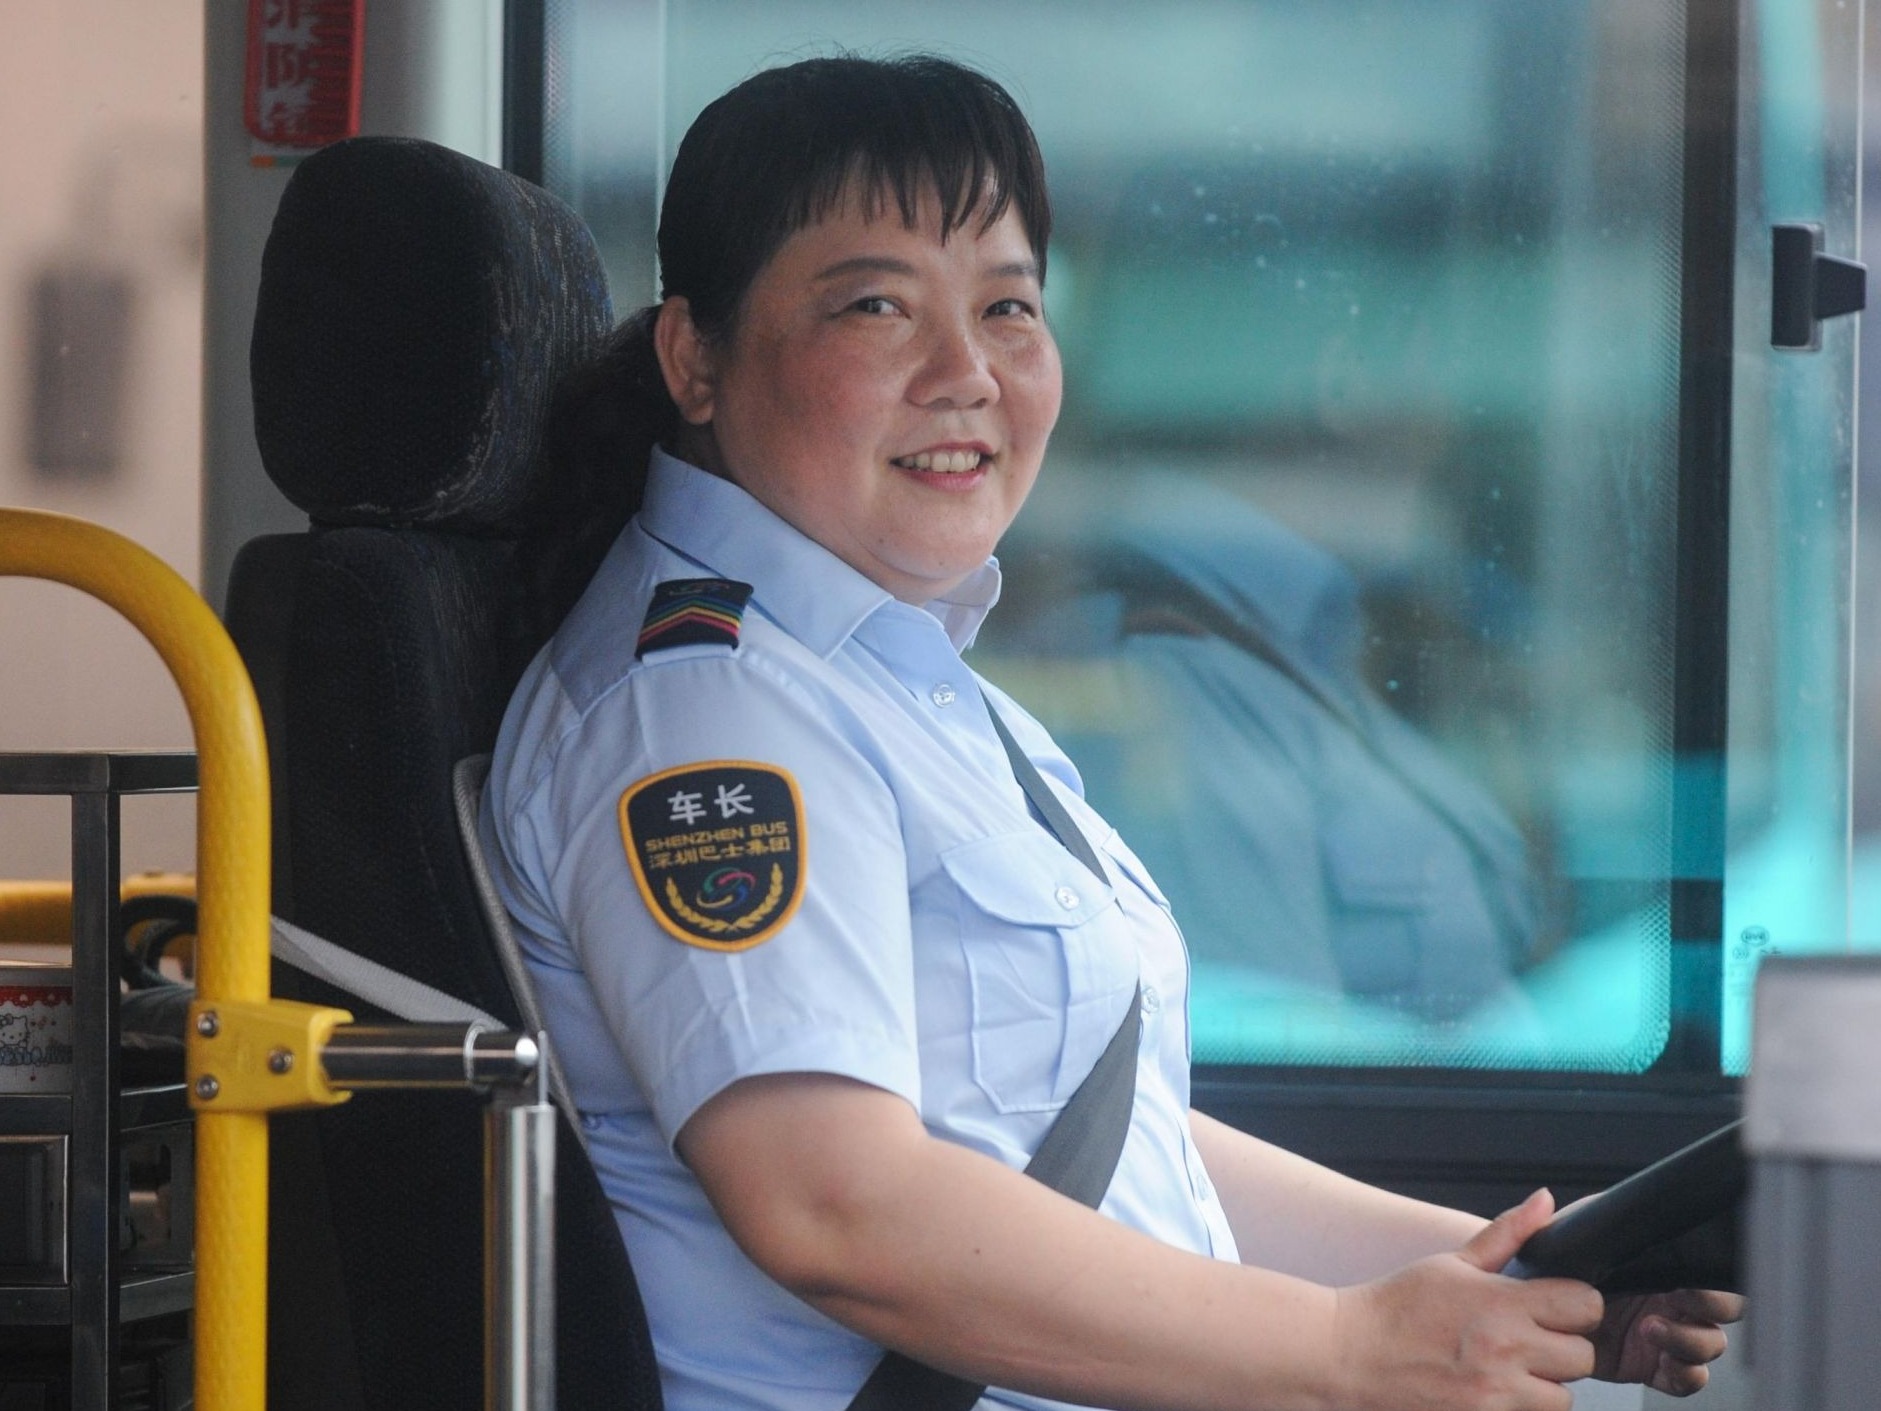 热情服务30余载零投诉零事故 在深圳有无数谢笑玲般的“最美公交司机”